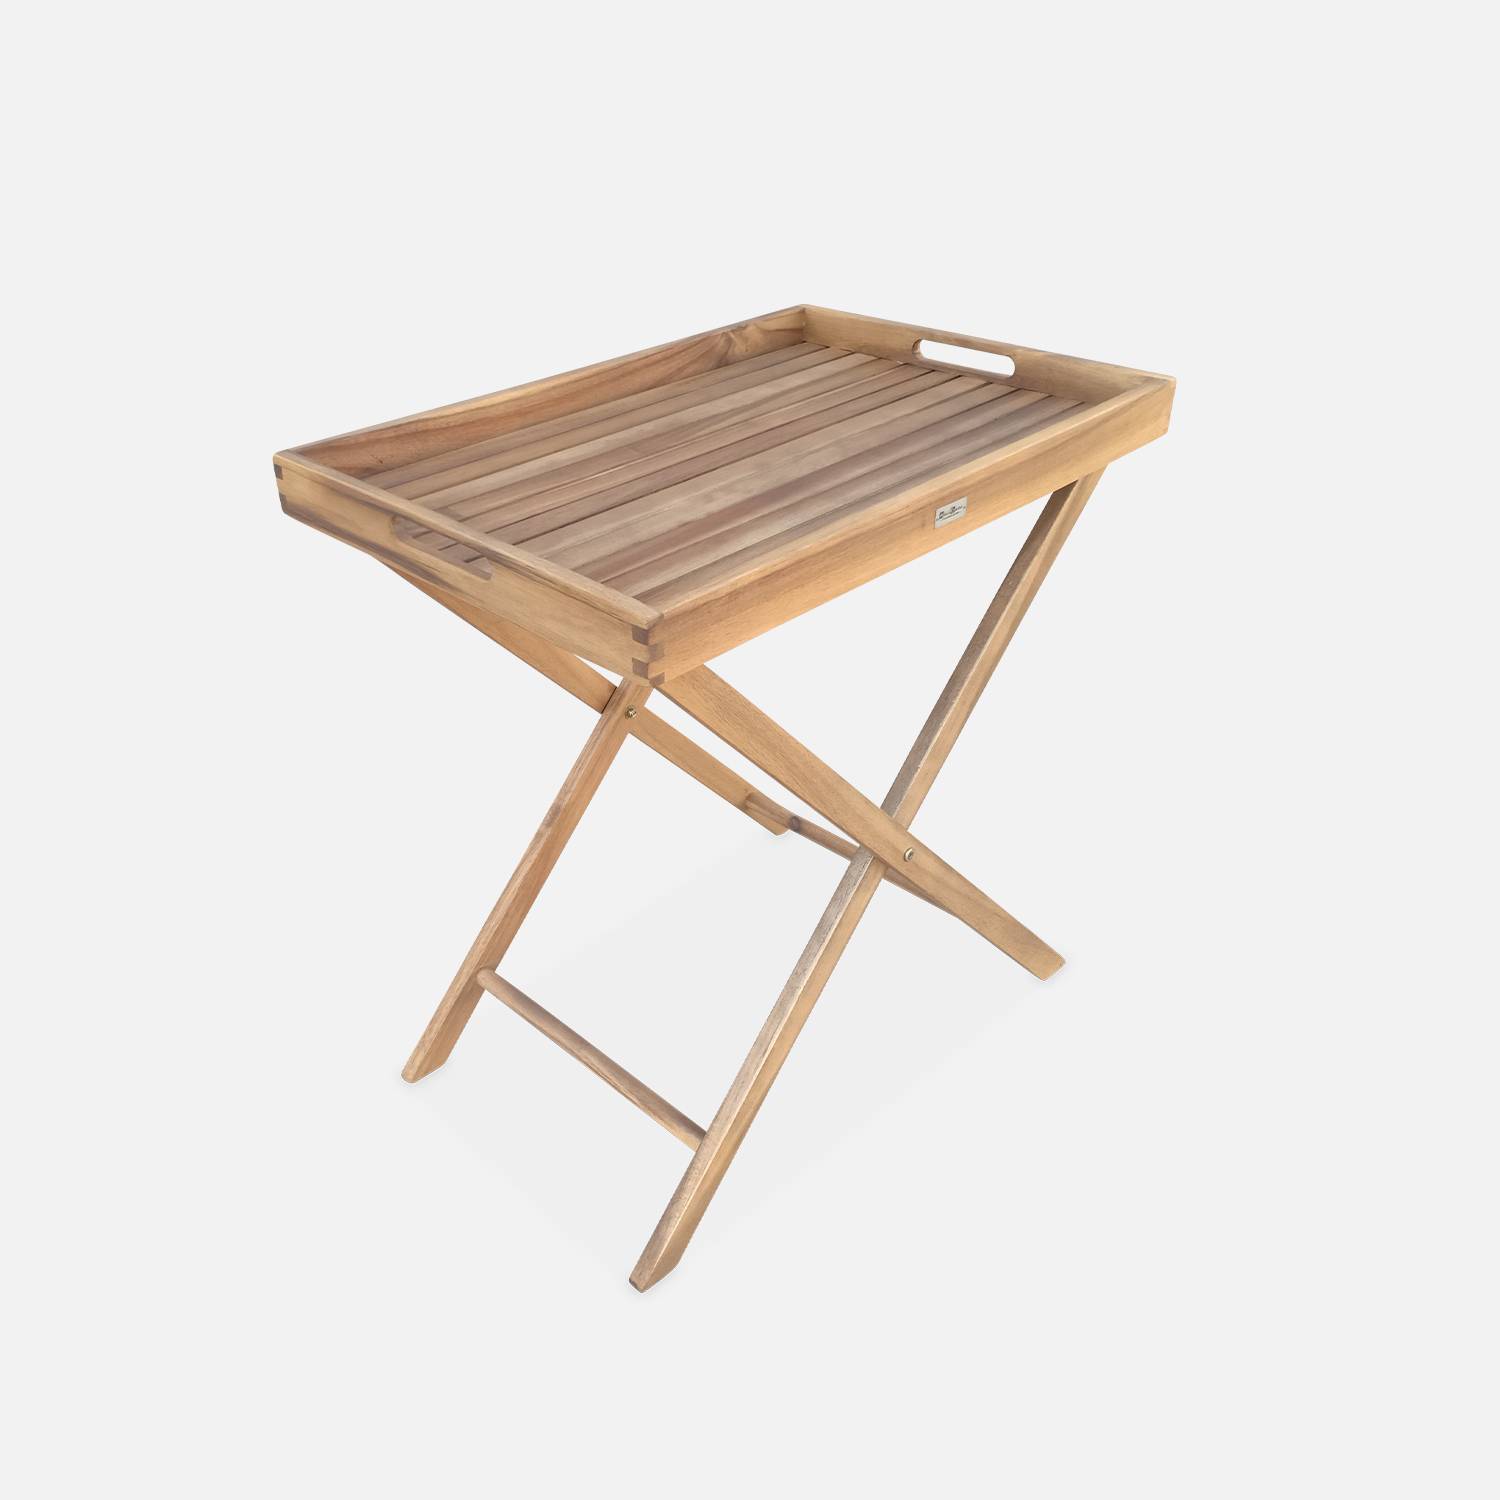 Tavolino da giardino, in legno, dimensioni: 68x44cm - modello: Murcia - Ripiano rimovibile su supporto, tavolo complementare, tavolino basso,sweeek,Photo3